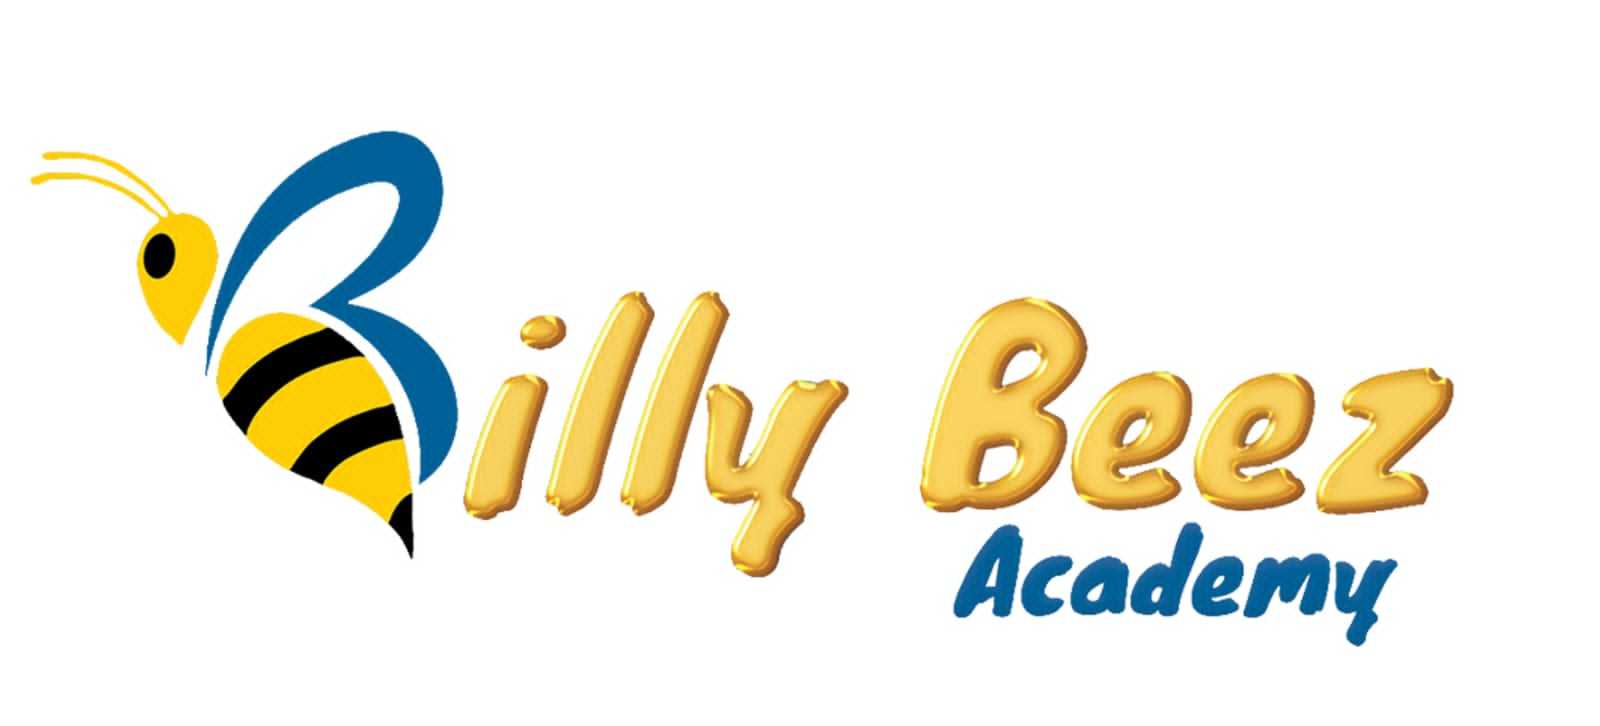 Billy beez academy 2